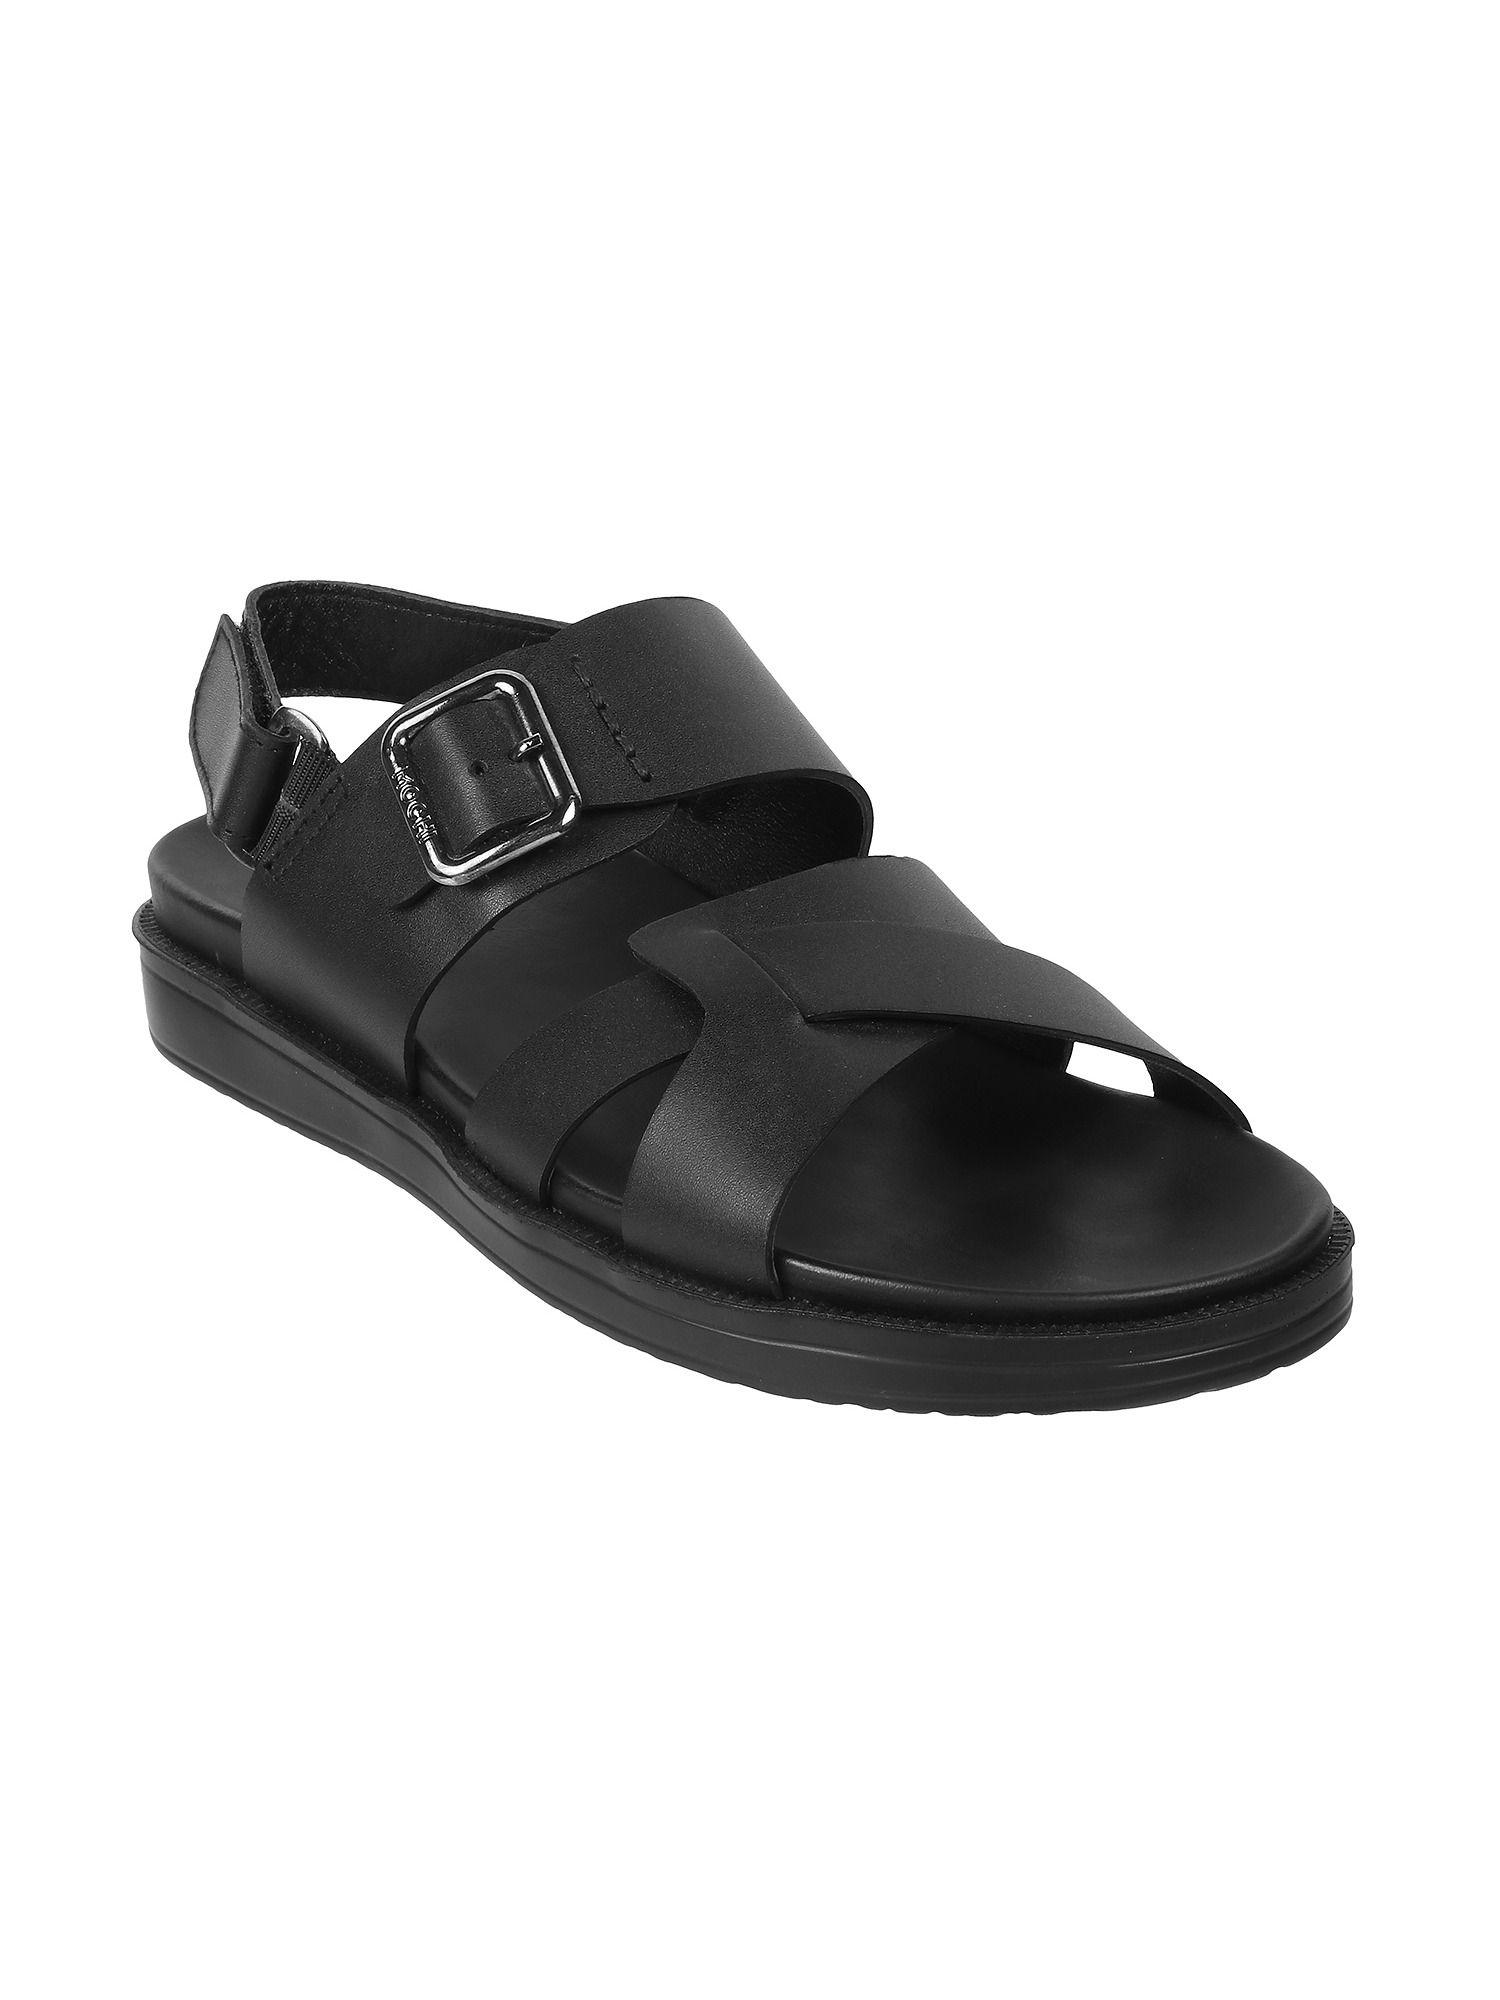 solid/plain-black-sandals